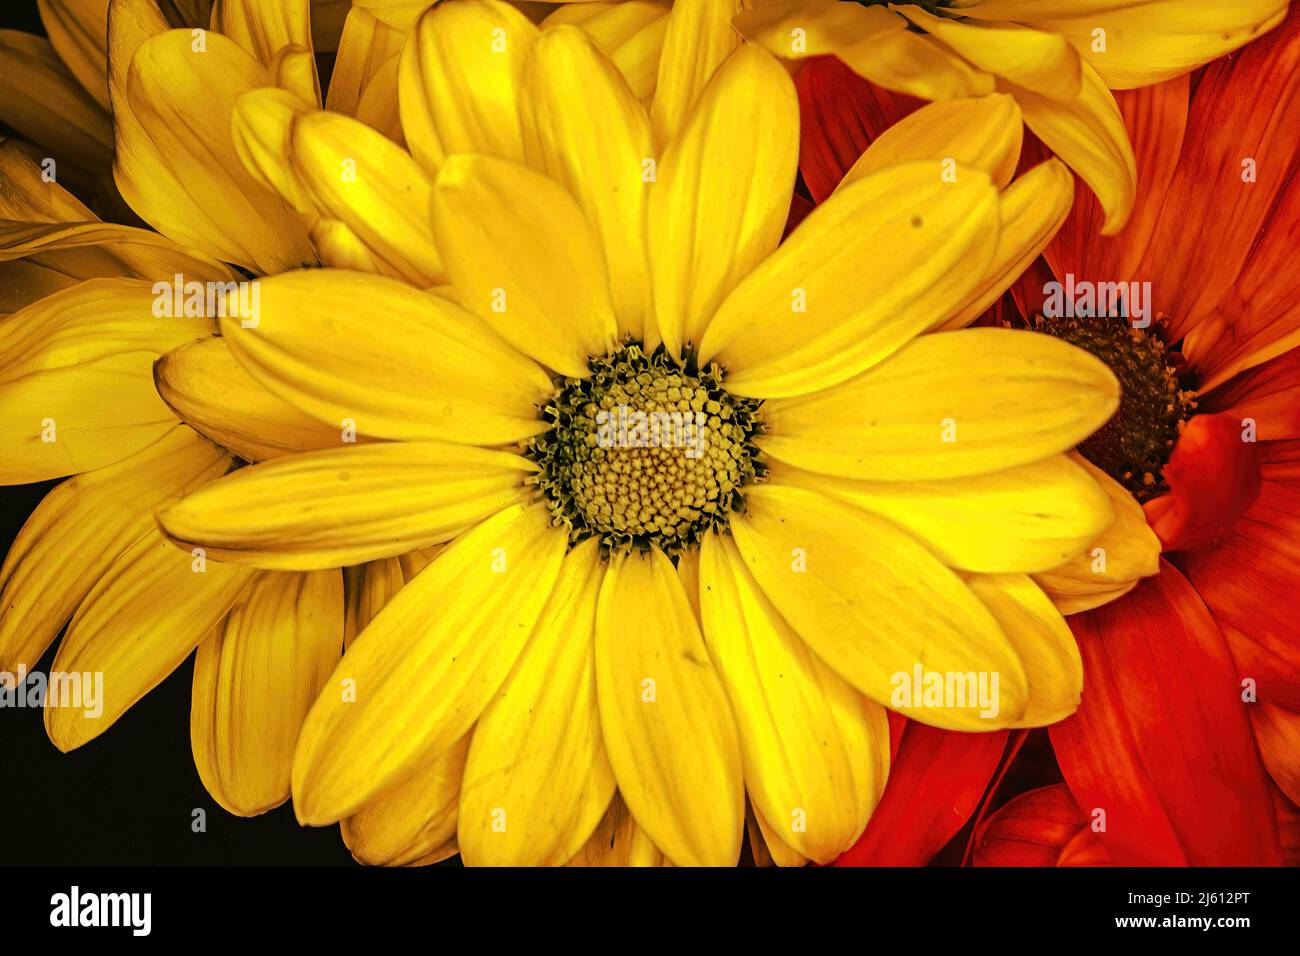 Eine gelbe Beleuchtung für Blumen und Gänseblümchen Stockfoto